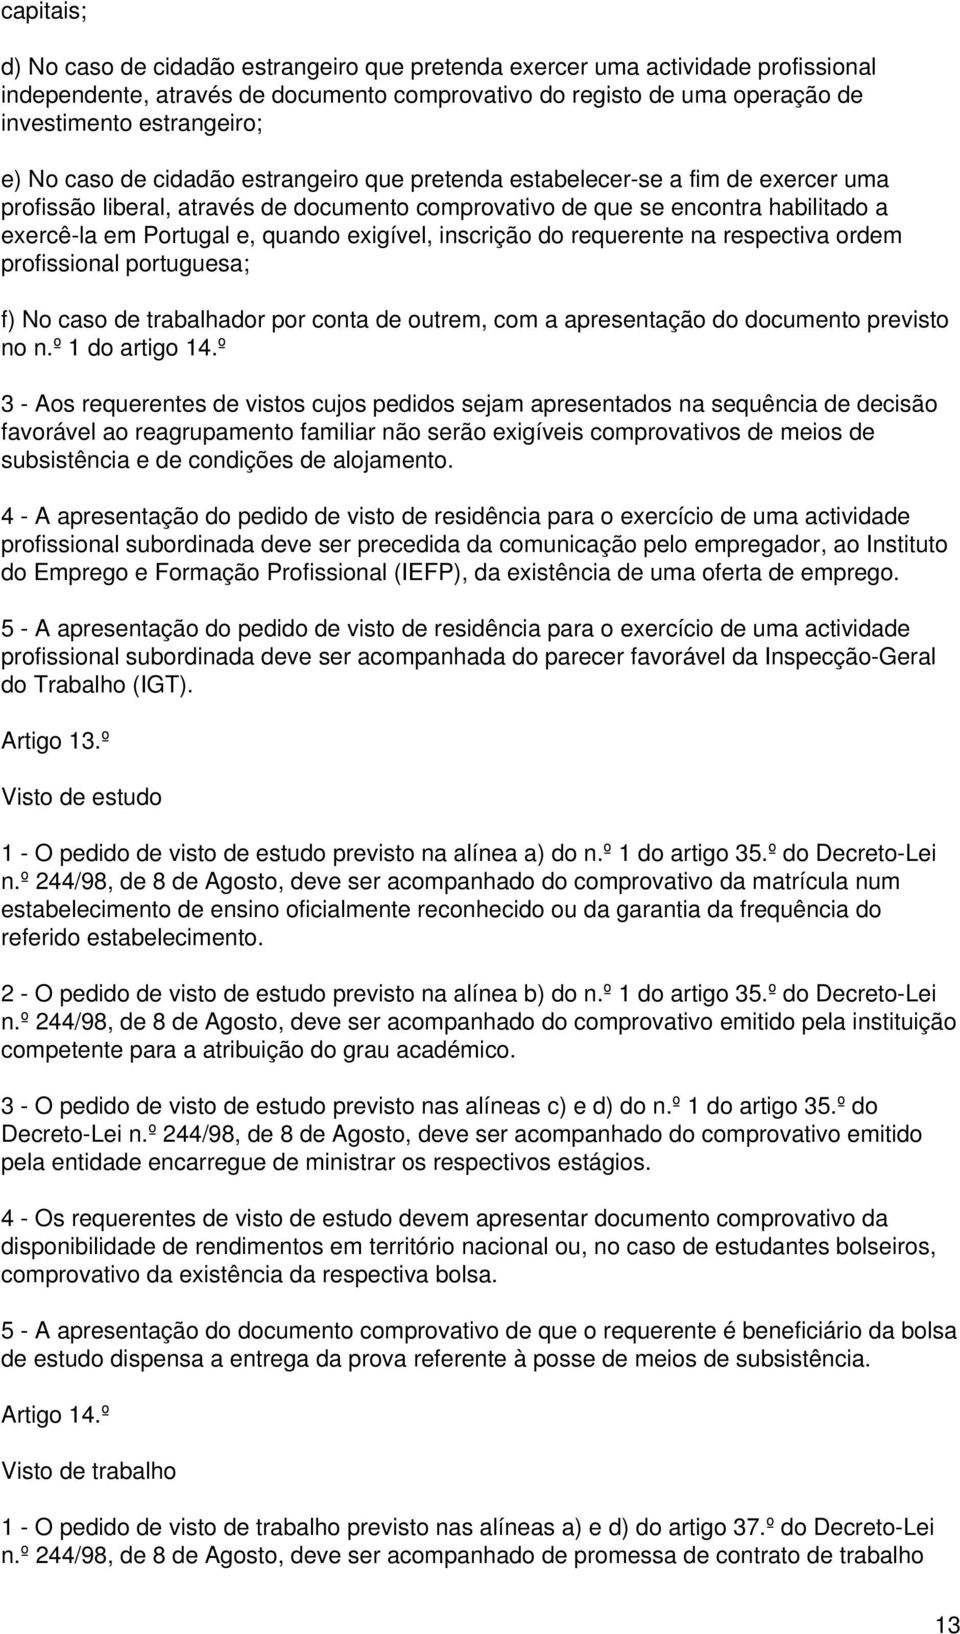 exigível, inscrição do requerente na respectiva ordem profissional portuguesa; f) No caso de trabalhador por conta de outrem, com a apresentação do documento previsto no n.º 1 do artigo 14.